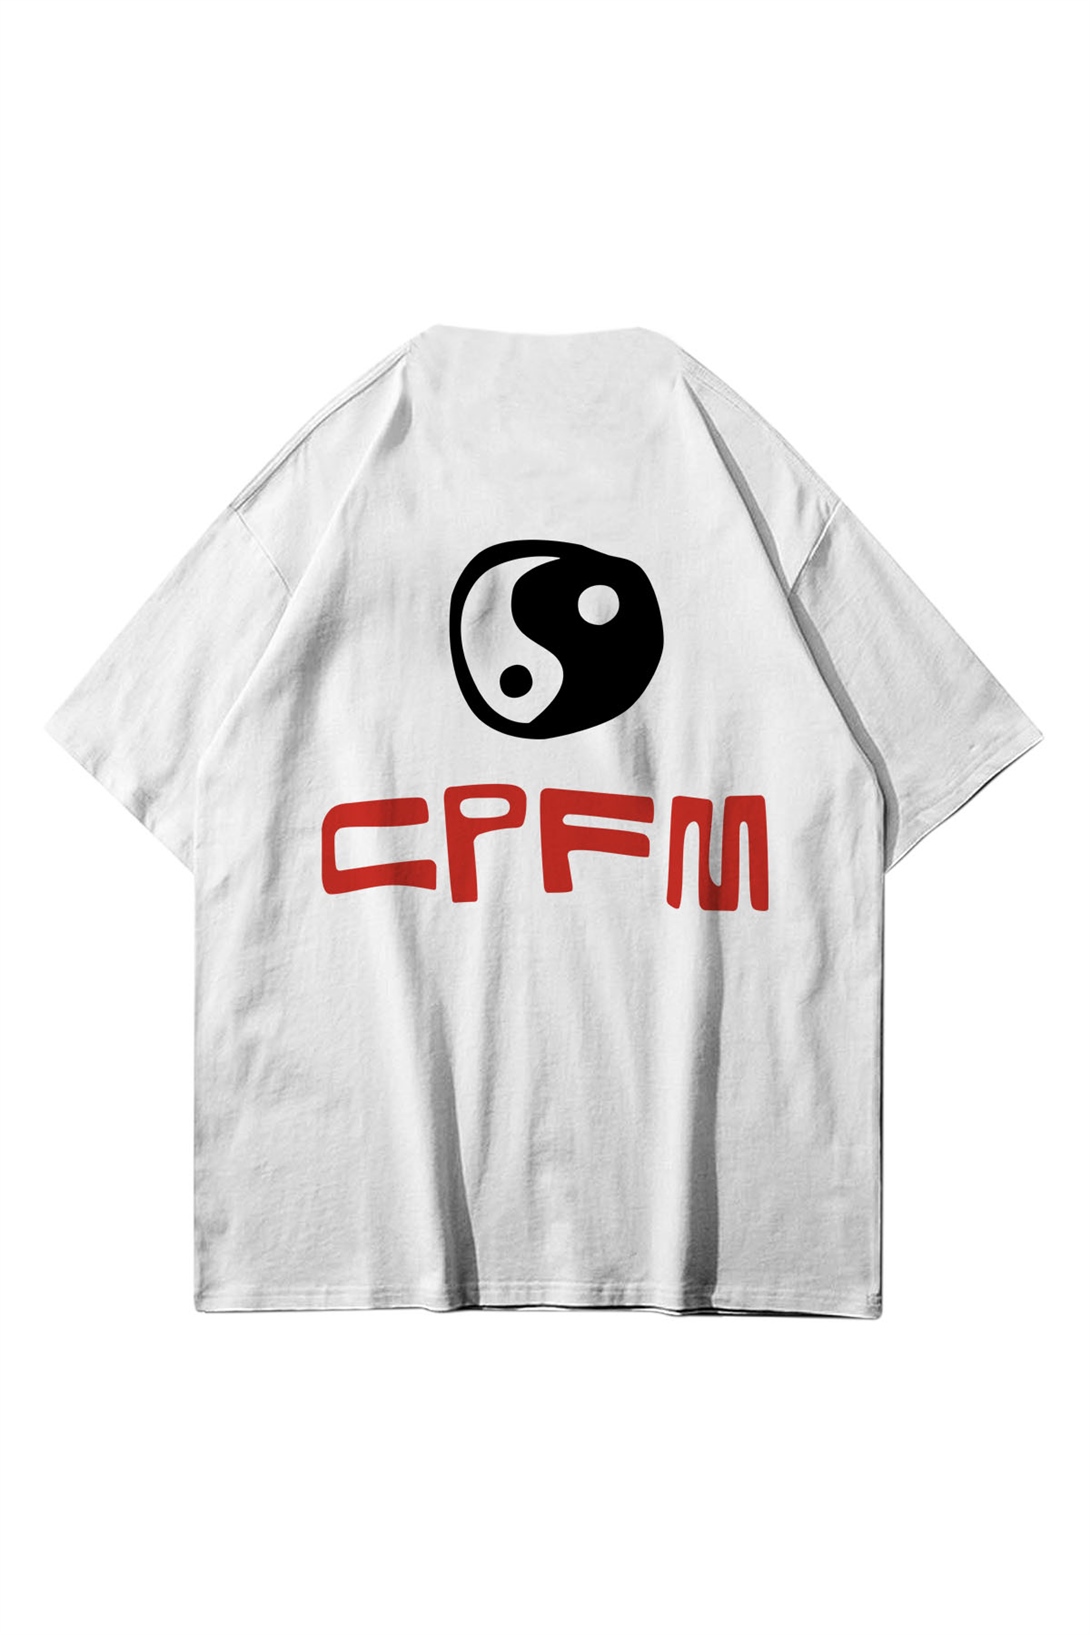 Trendiz Unisex CDG i'm ok! CPFM Beyaz Tshirt